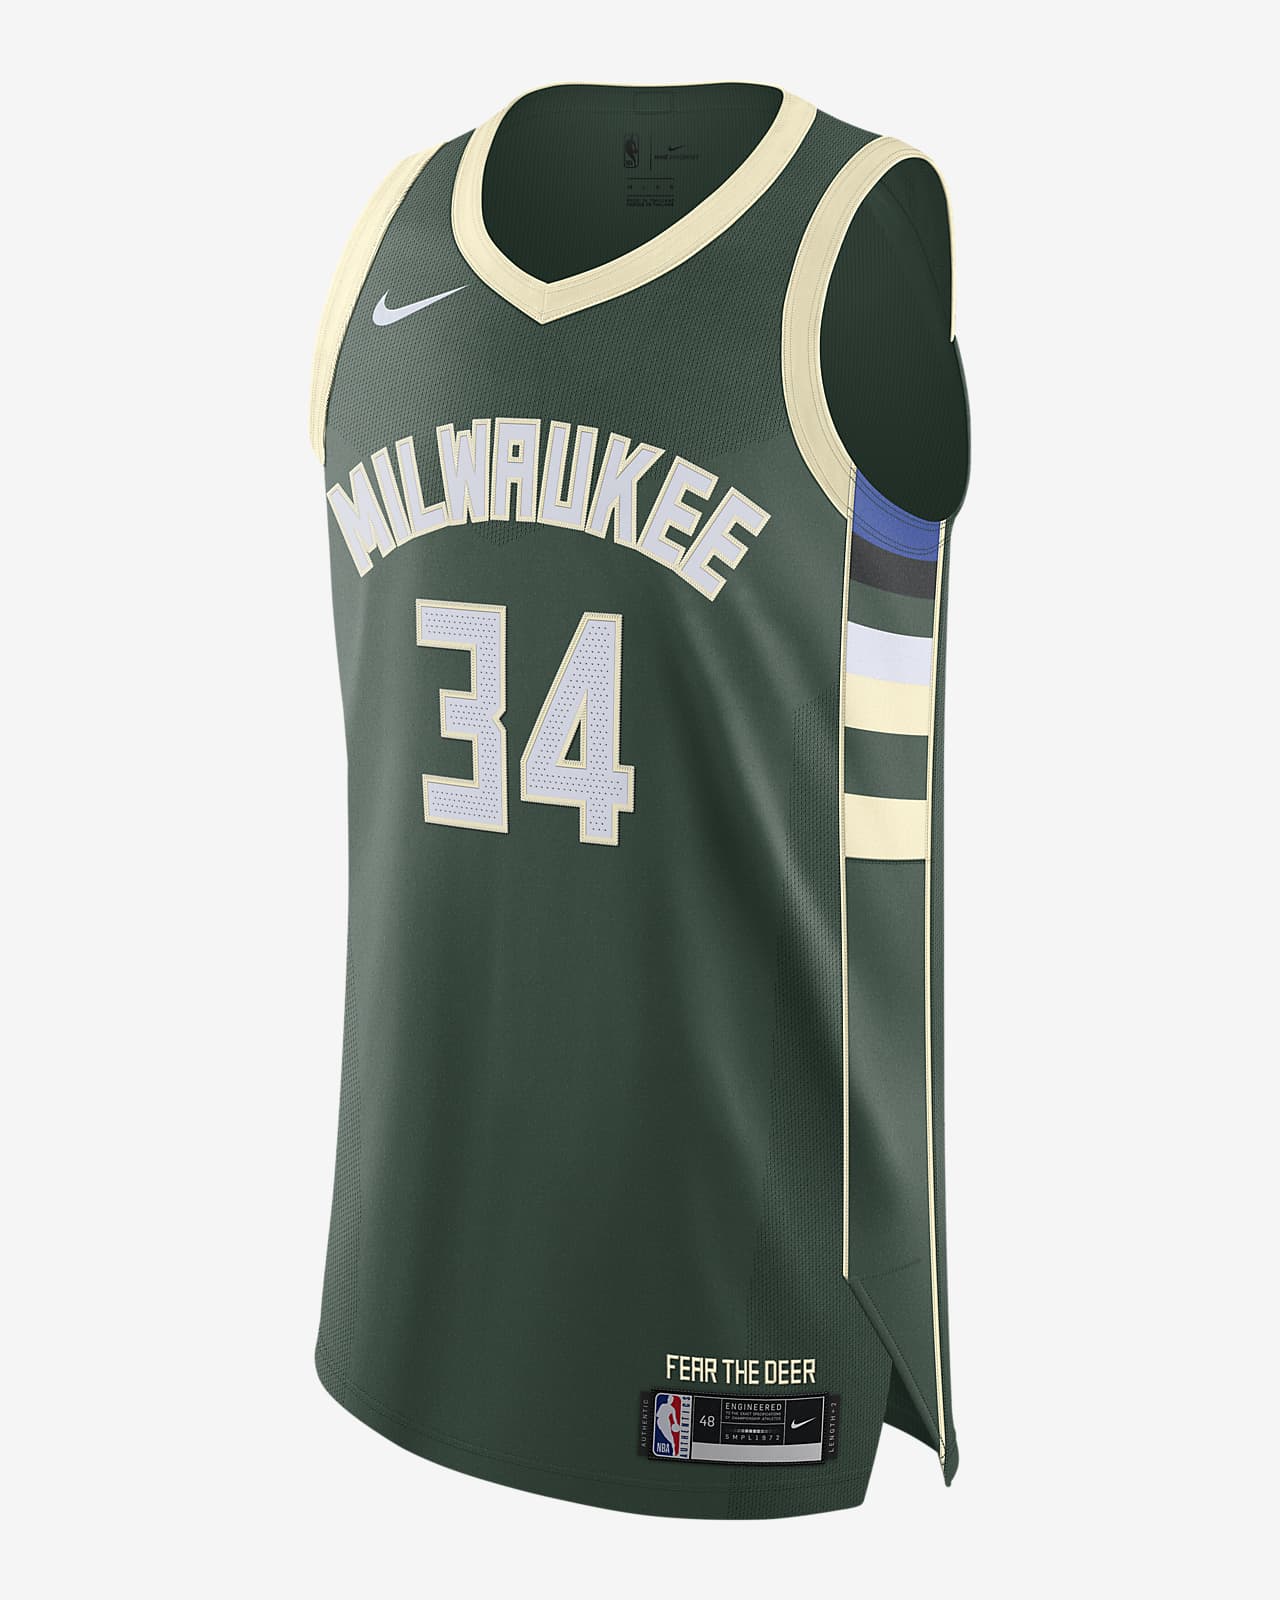 Maglia Giannis Antetokounmpo Bucks Icon Edition 2020 Authentic Nike NBA – Uomo